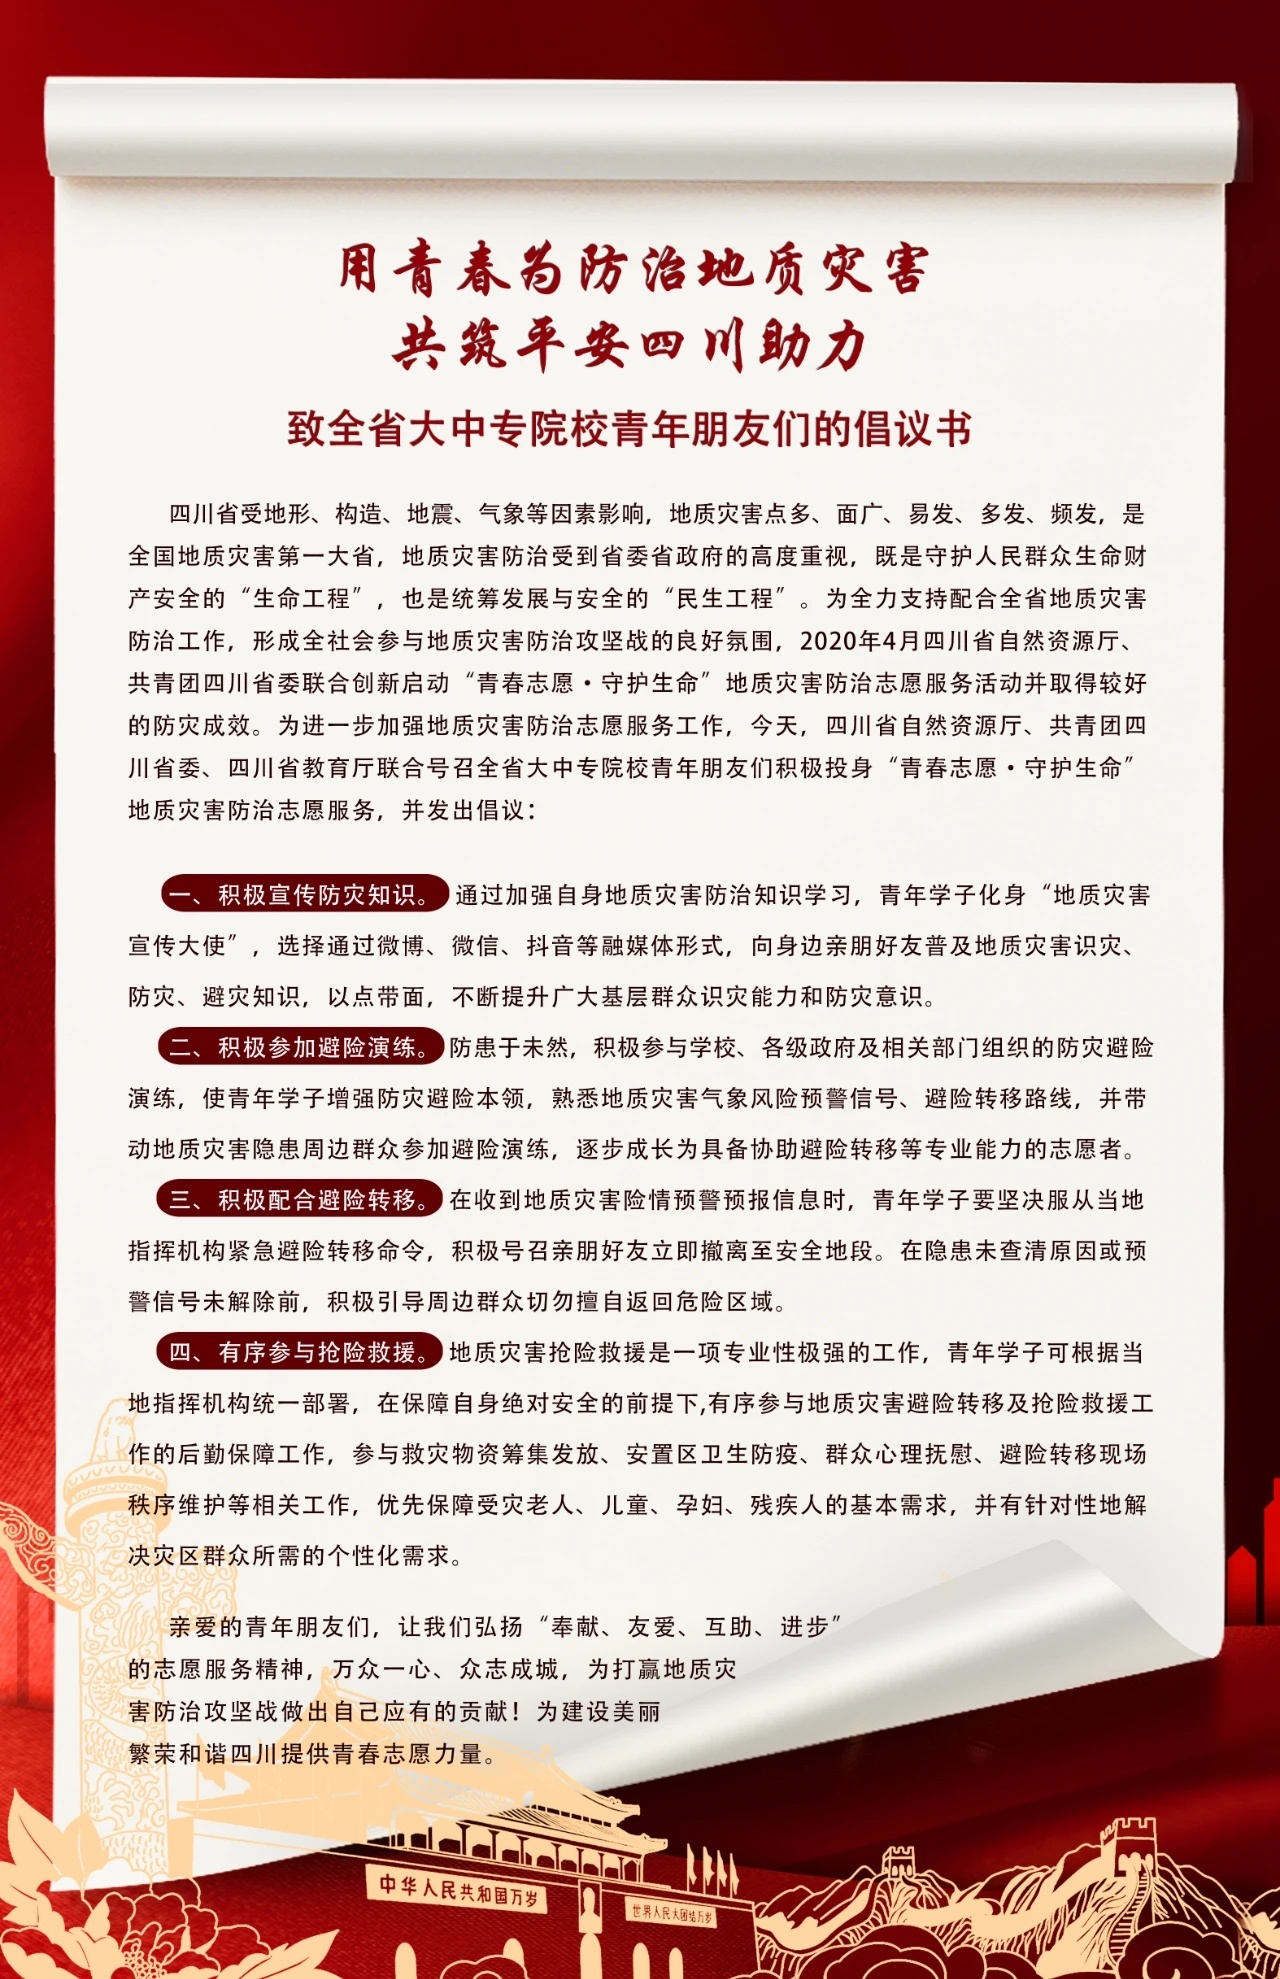 @全省青年学子：这里有一份防治地质灾害倡议书，请你查收!